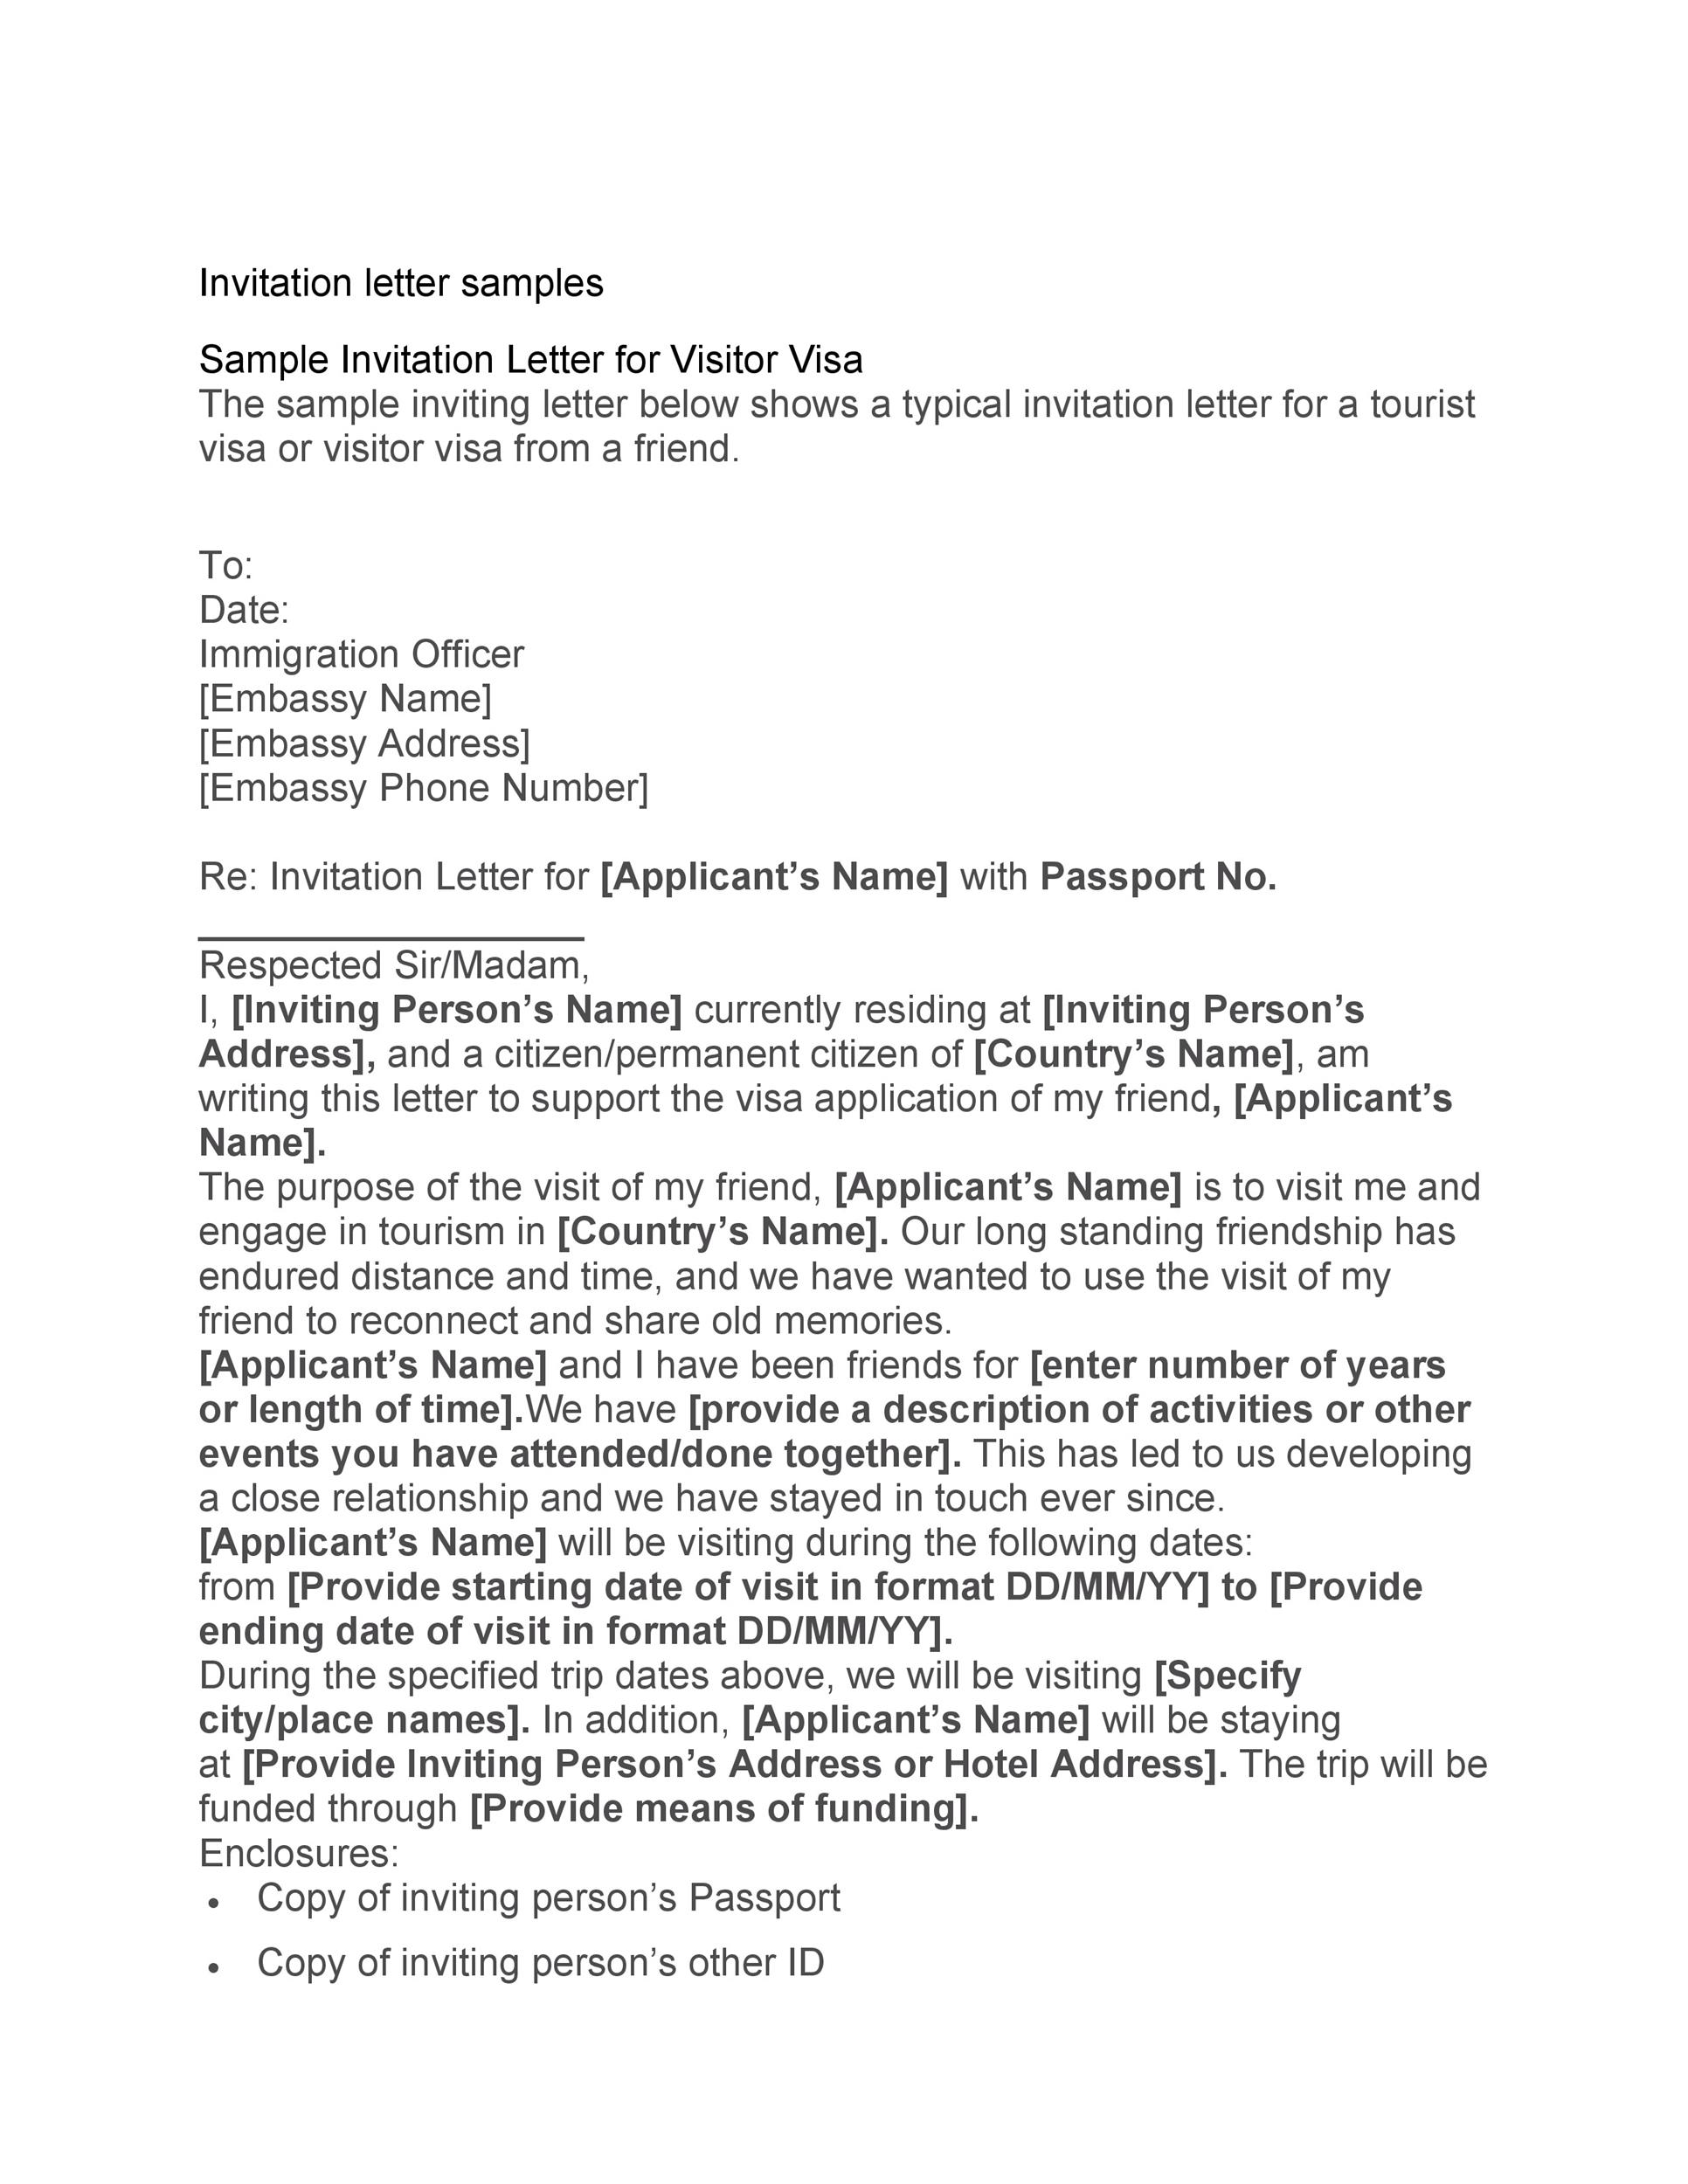 invitation letter for visit visa uk